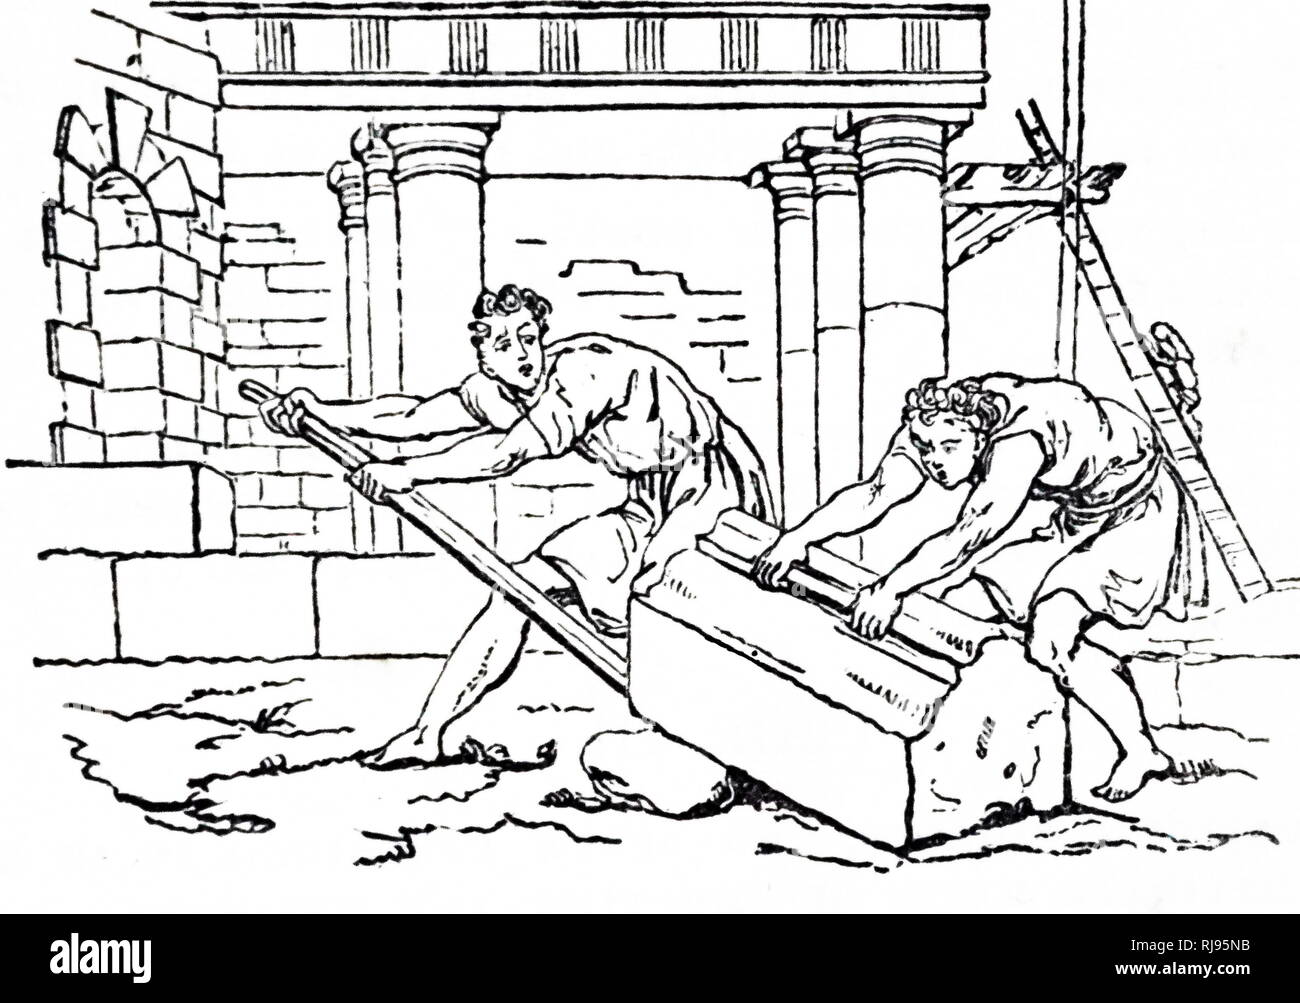 Illustration montrant deux constructeurs s'appuyant sur une grosse pierre sur un chantier de construction. Angleterre 1836 Banque D'Images